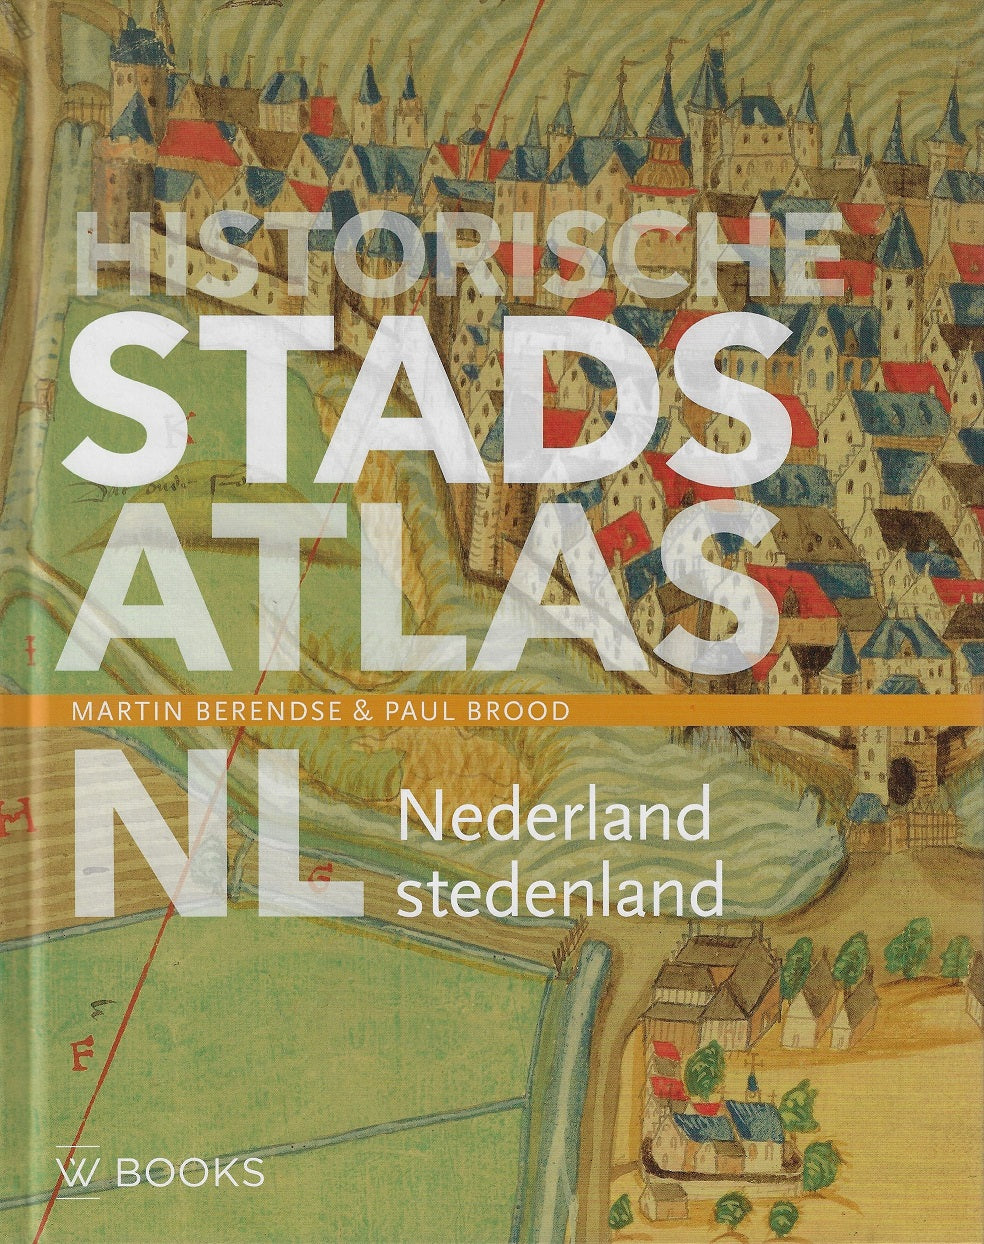 Historische stadsatlas NL / Nederland stedenland